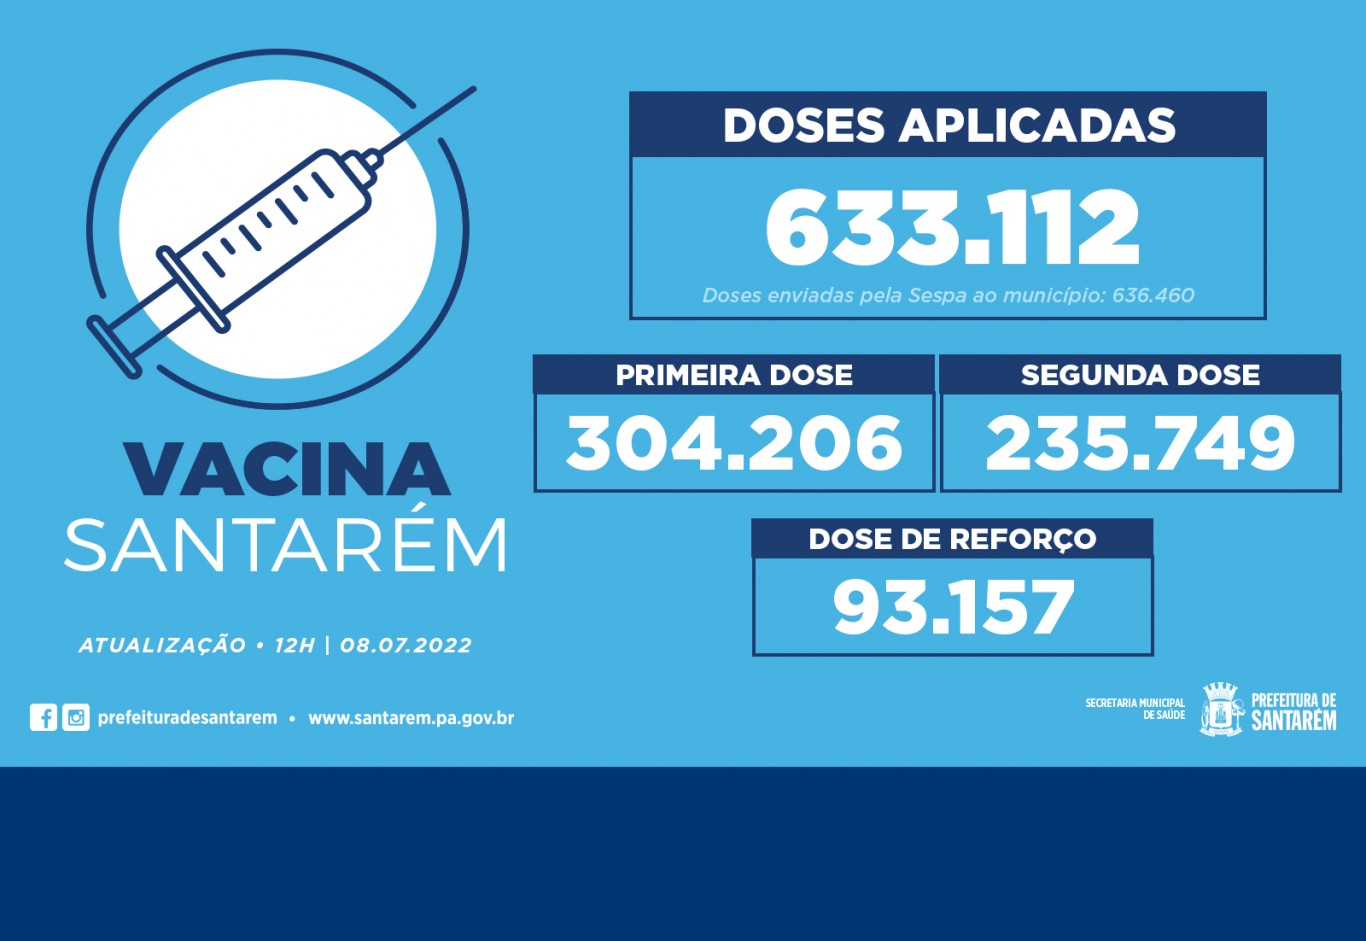 Santarém já aplicou 633.112 doses de vacinas contra a covid-19